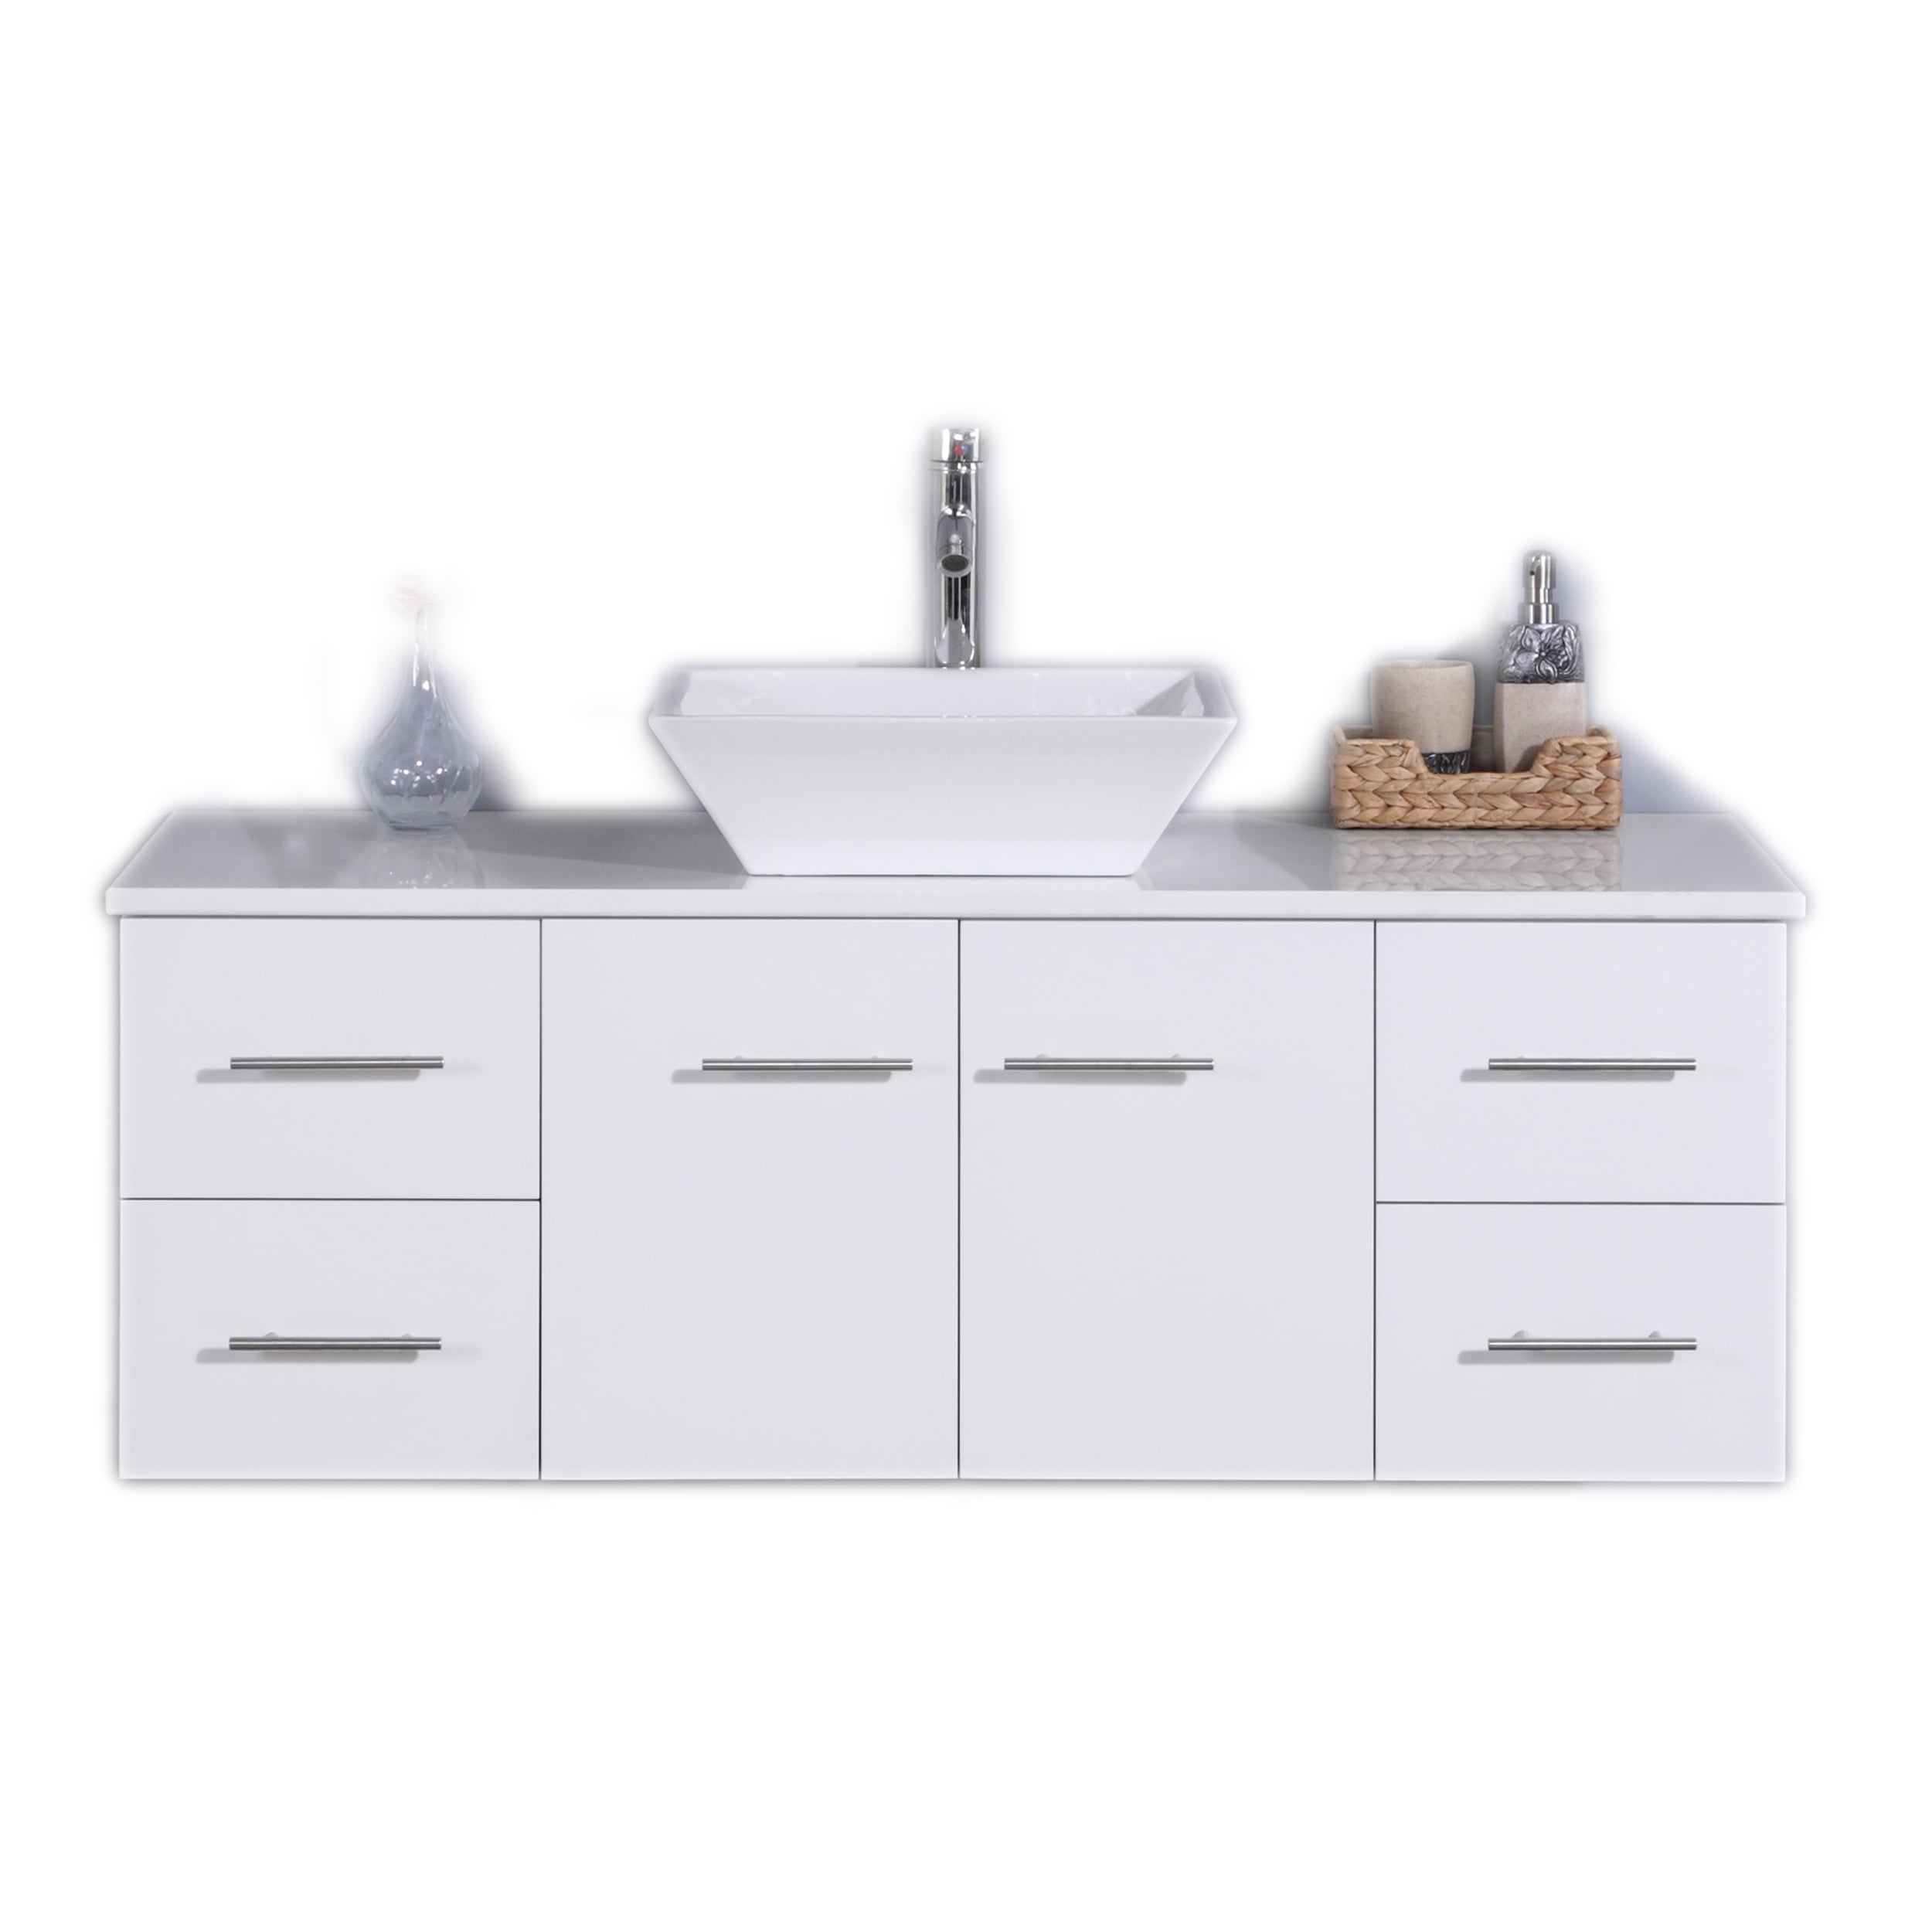 White Modern Bathroom Vanity, Bathroom Vanity Tops With Sink 48 Inches